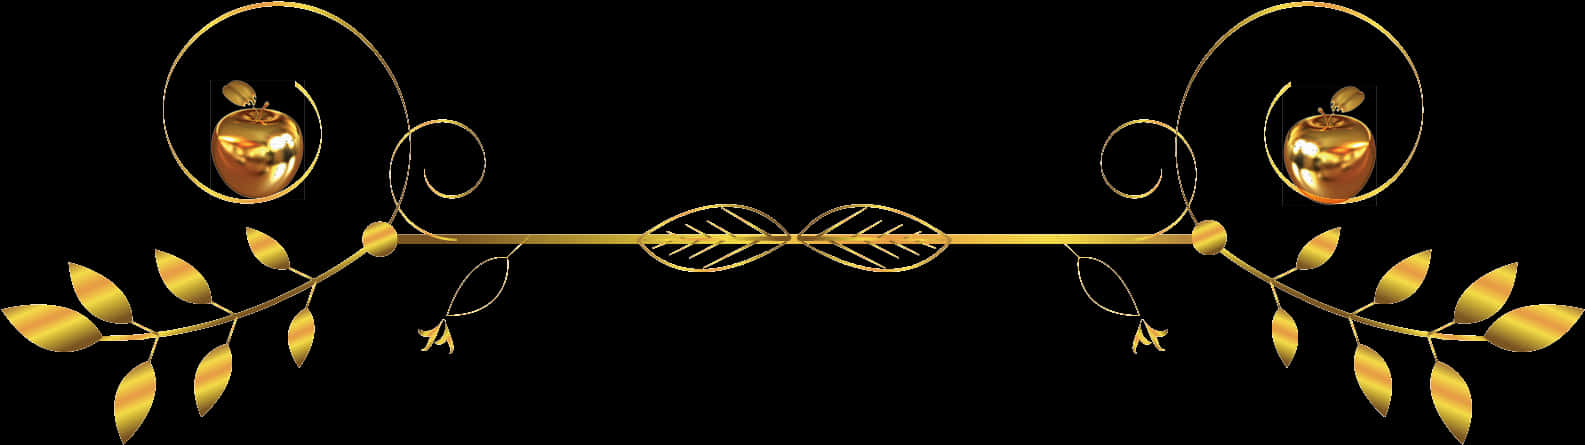 A Gold Leaf Design On A Black Background